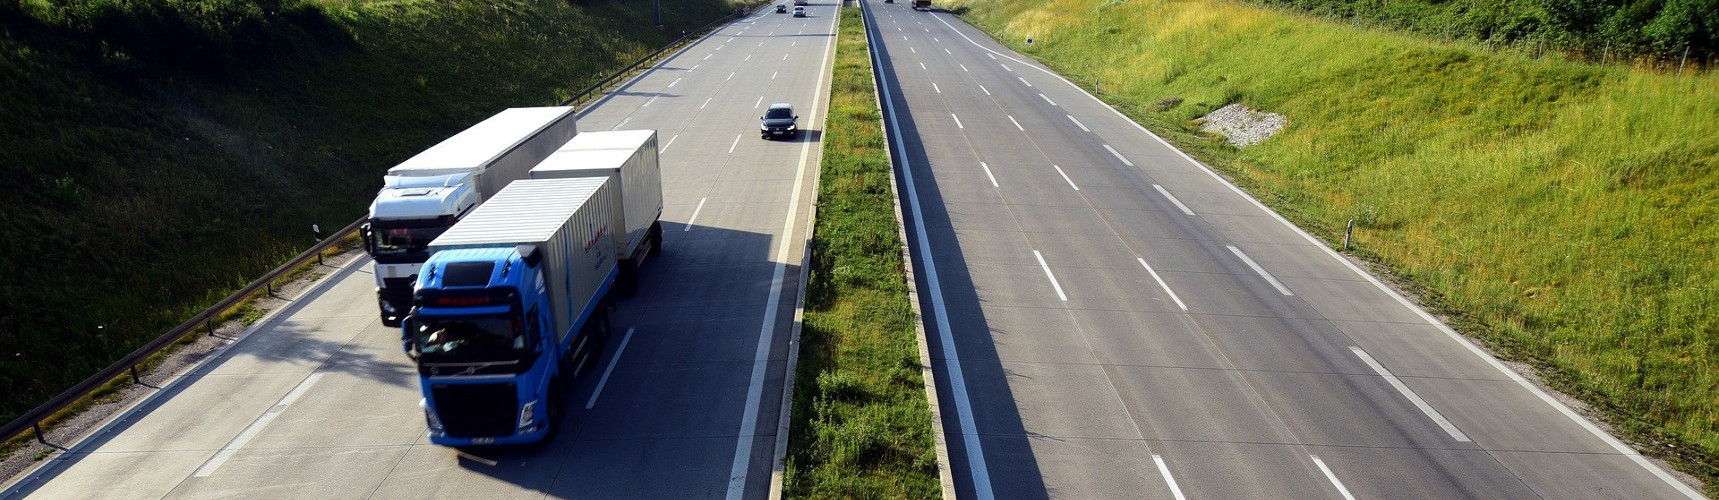 Transporte rodoviário de cargas: em primeiro plano dois veículos pesados transitam com carga na rodovia